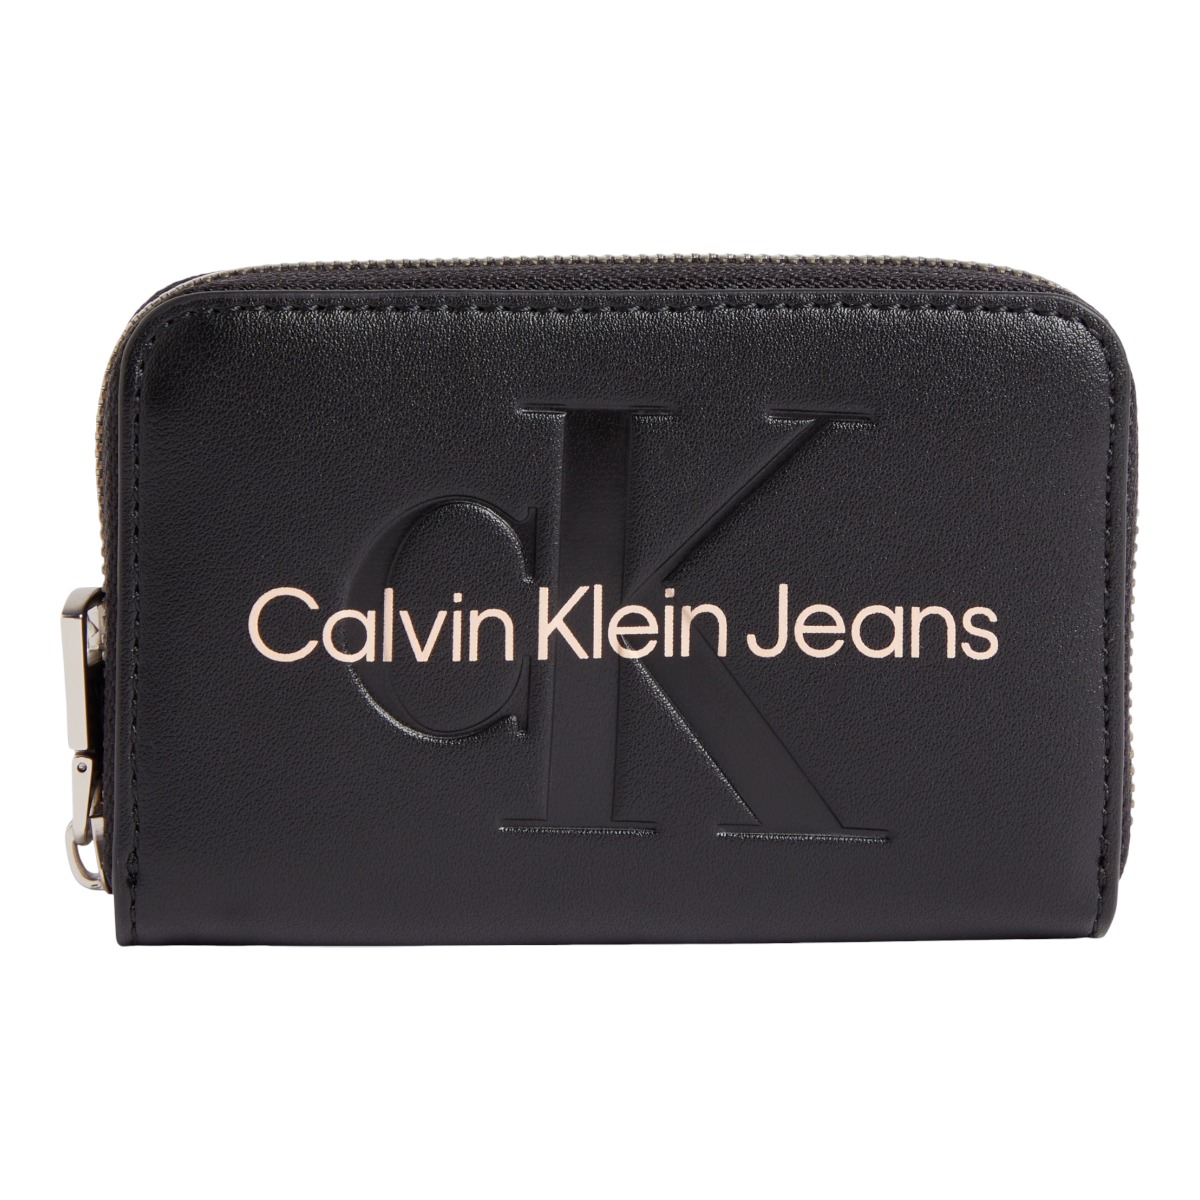 Levně Calvin Klein Jeans Woman's Wallet 8720108589840